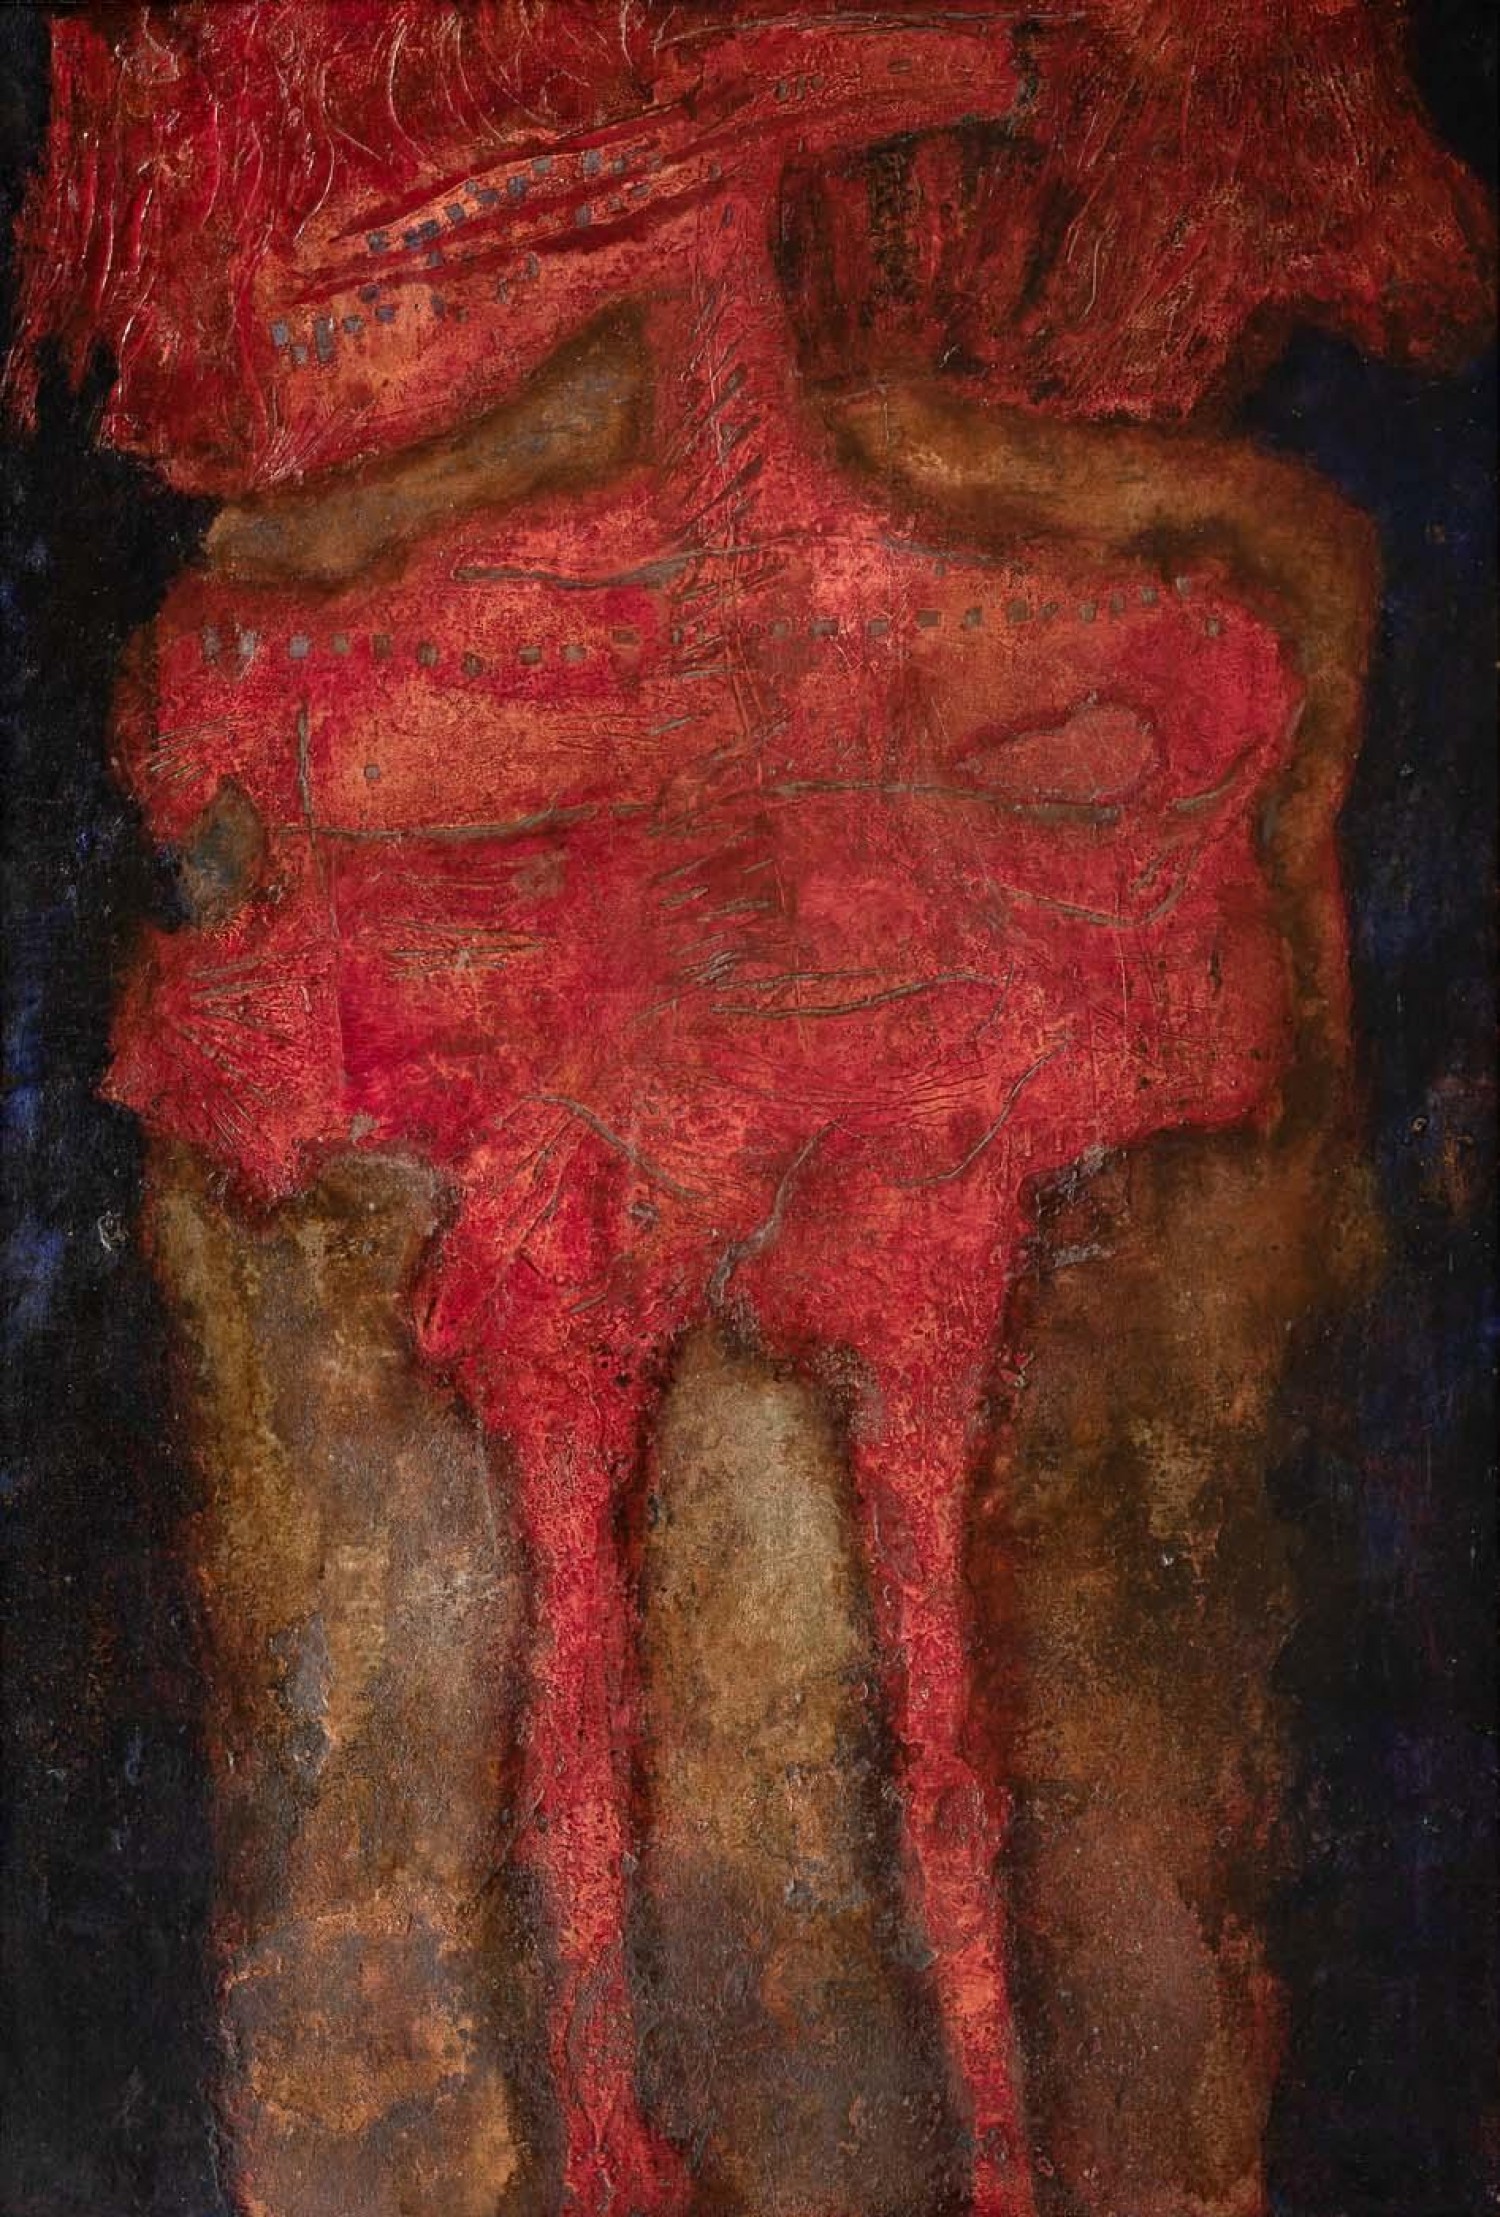 Jan Koblasa: Citový život III, 1965, kombinovaná technika na lepence, 120 x 84 cm, cena: 400 000 Kč (+ aukční provize 20%), Galerie Kodl 29.11. 2020